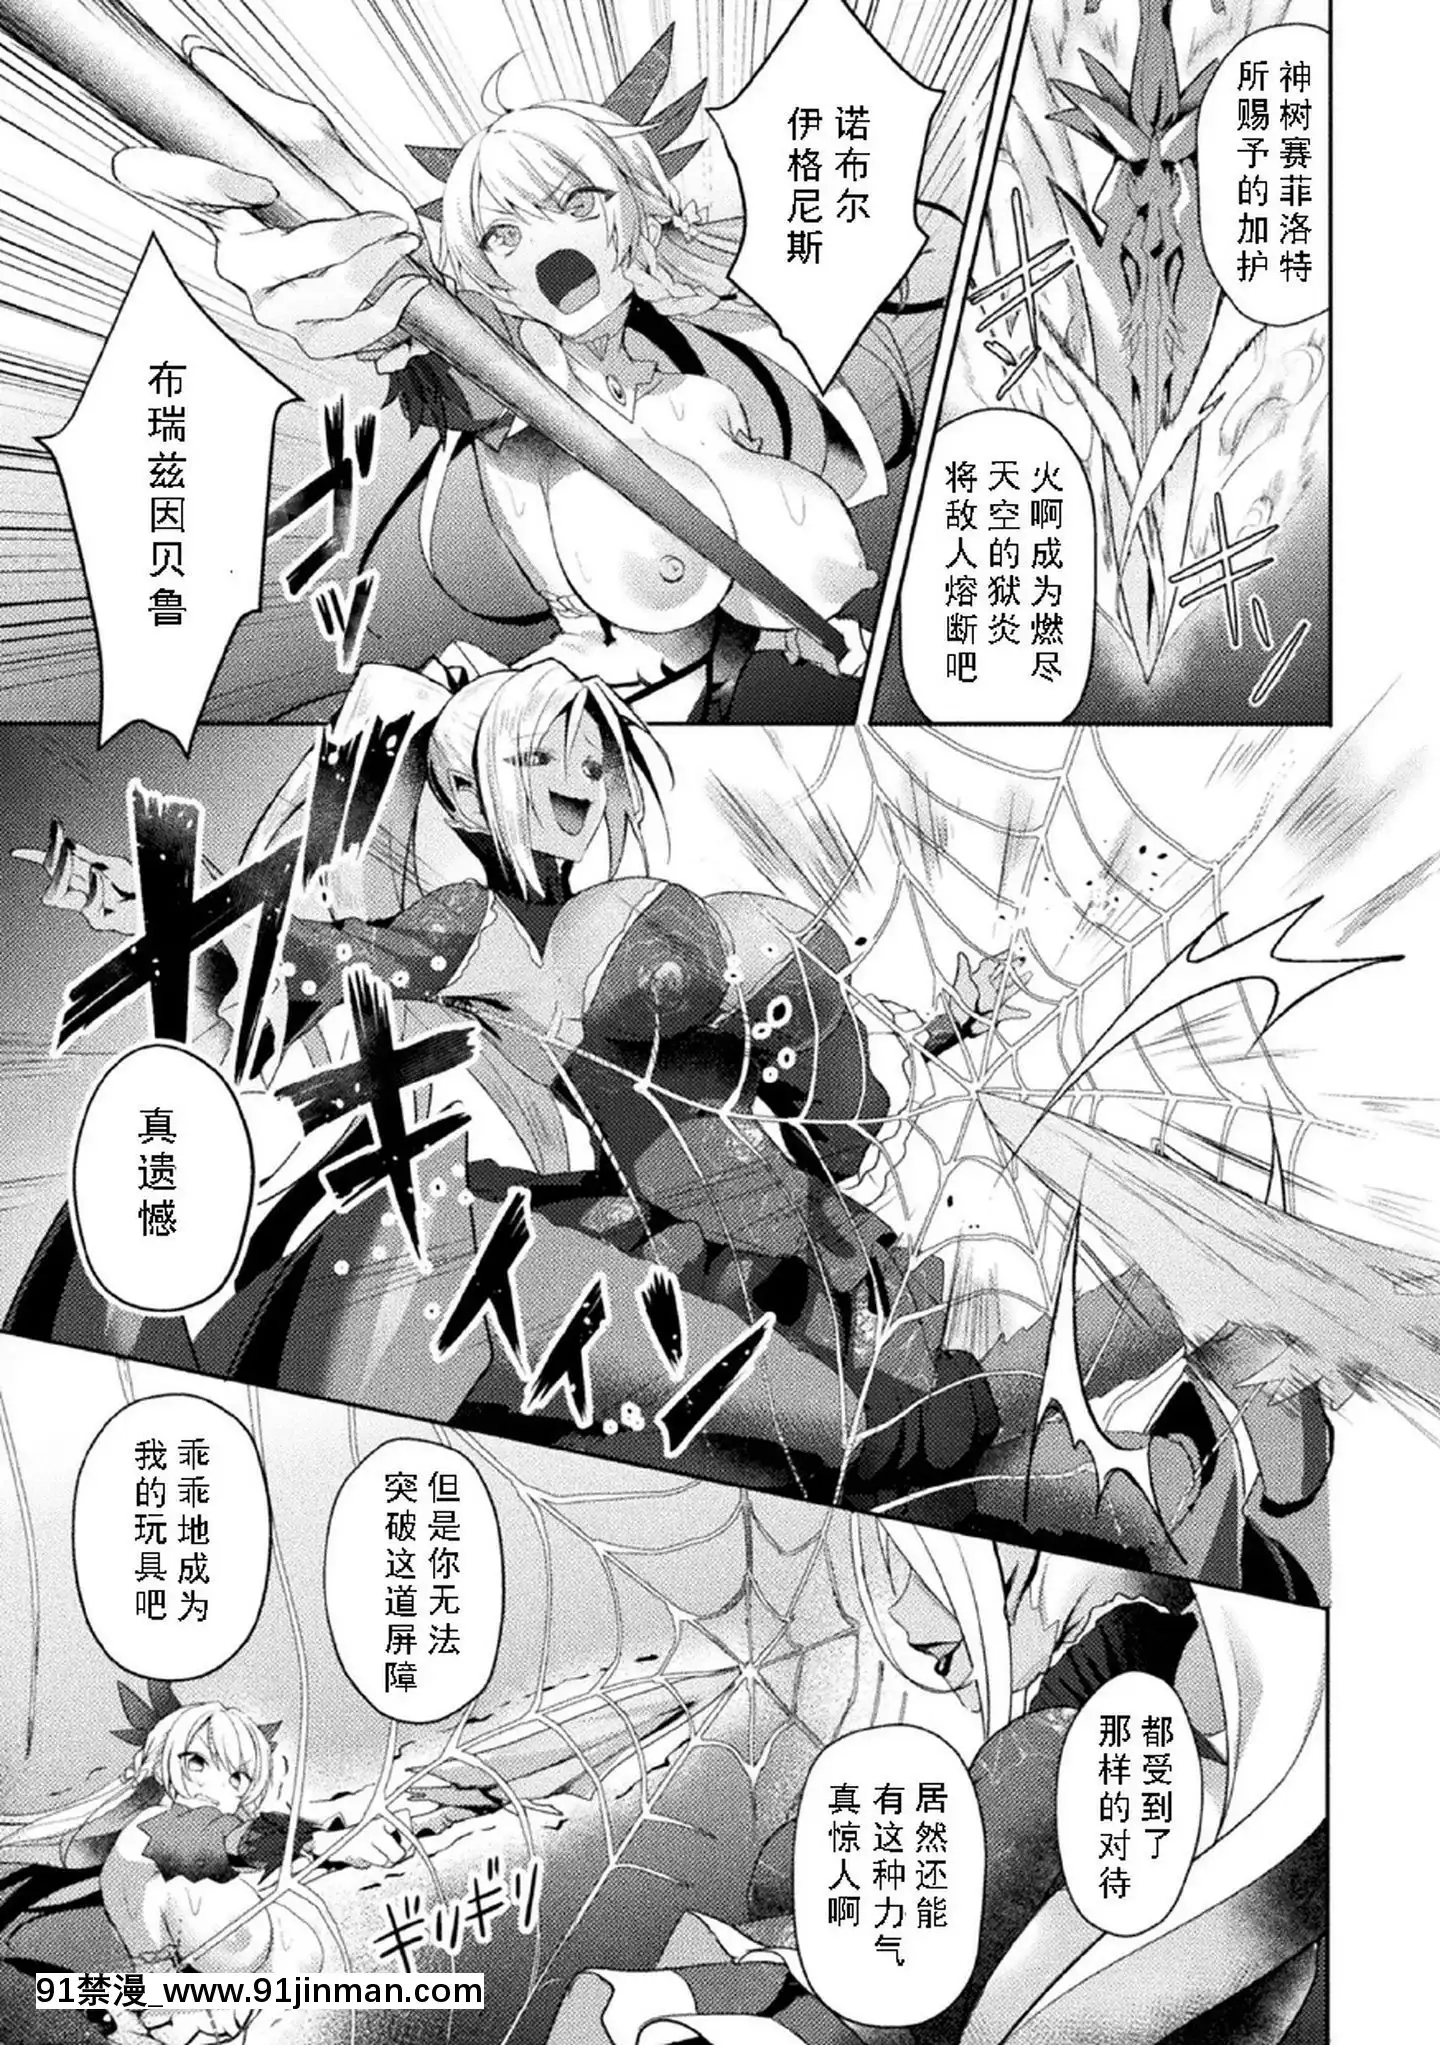 [Kisaragi Reiko Nhóm Trung Quốc][Minoru Koikawa]Eden's Ritter Lewd Samurai Lucifer hen THECOMIC Tập 3 (Natsuhoku Maiden Ecstasy Vol.23)【7 viên ngọc rồng siêu cấp truyện tranh】